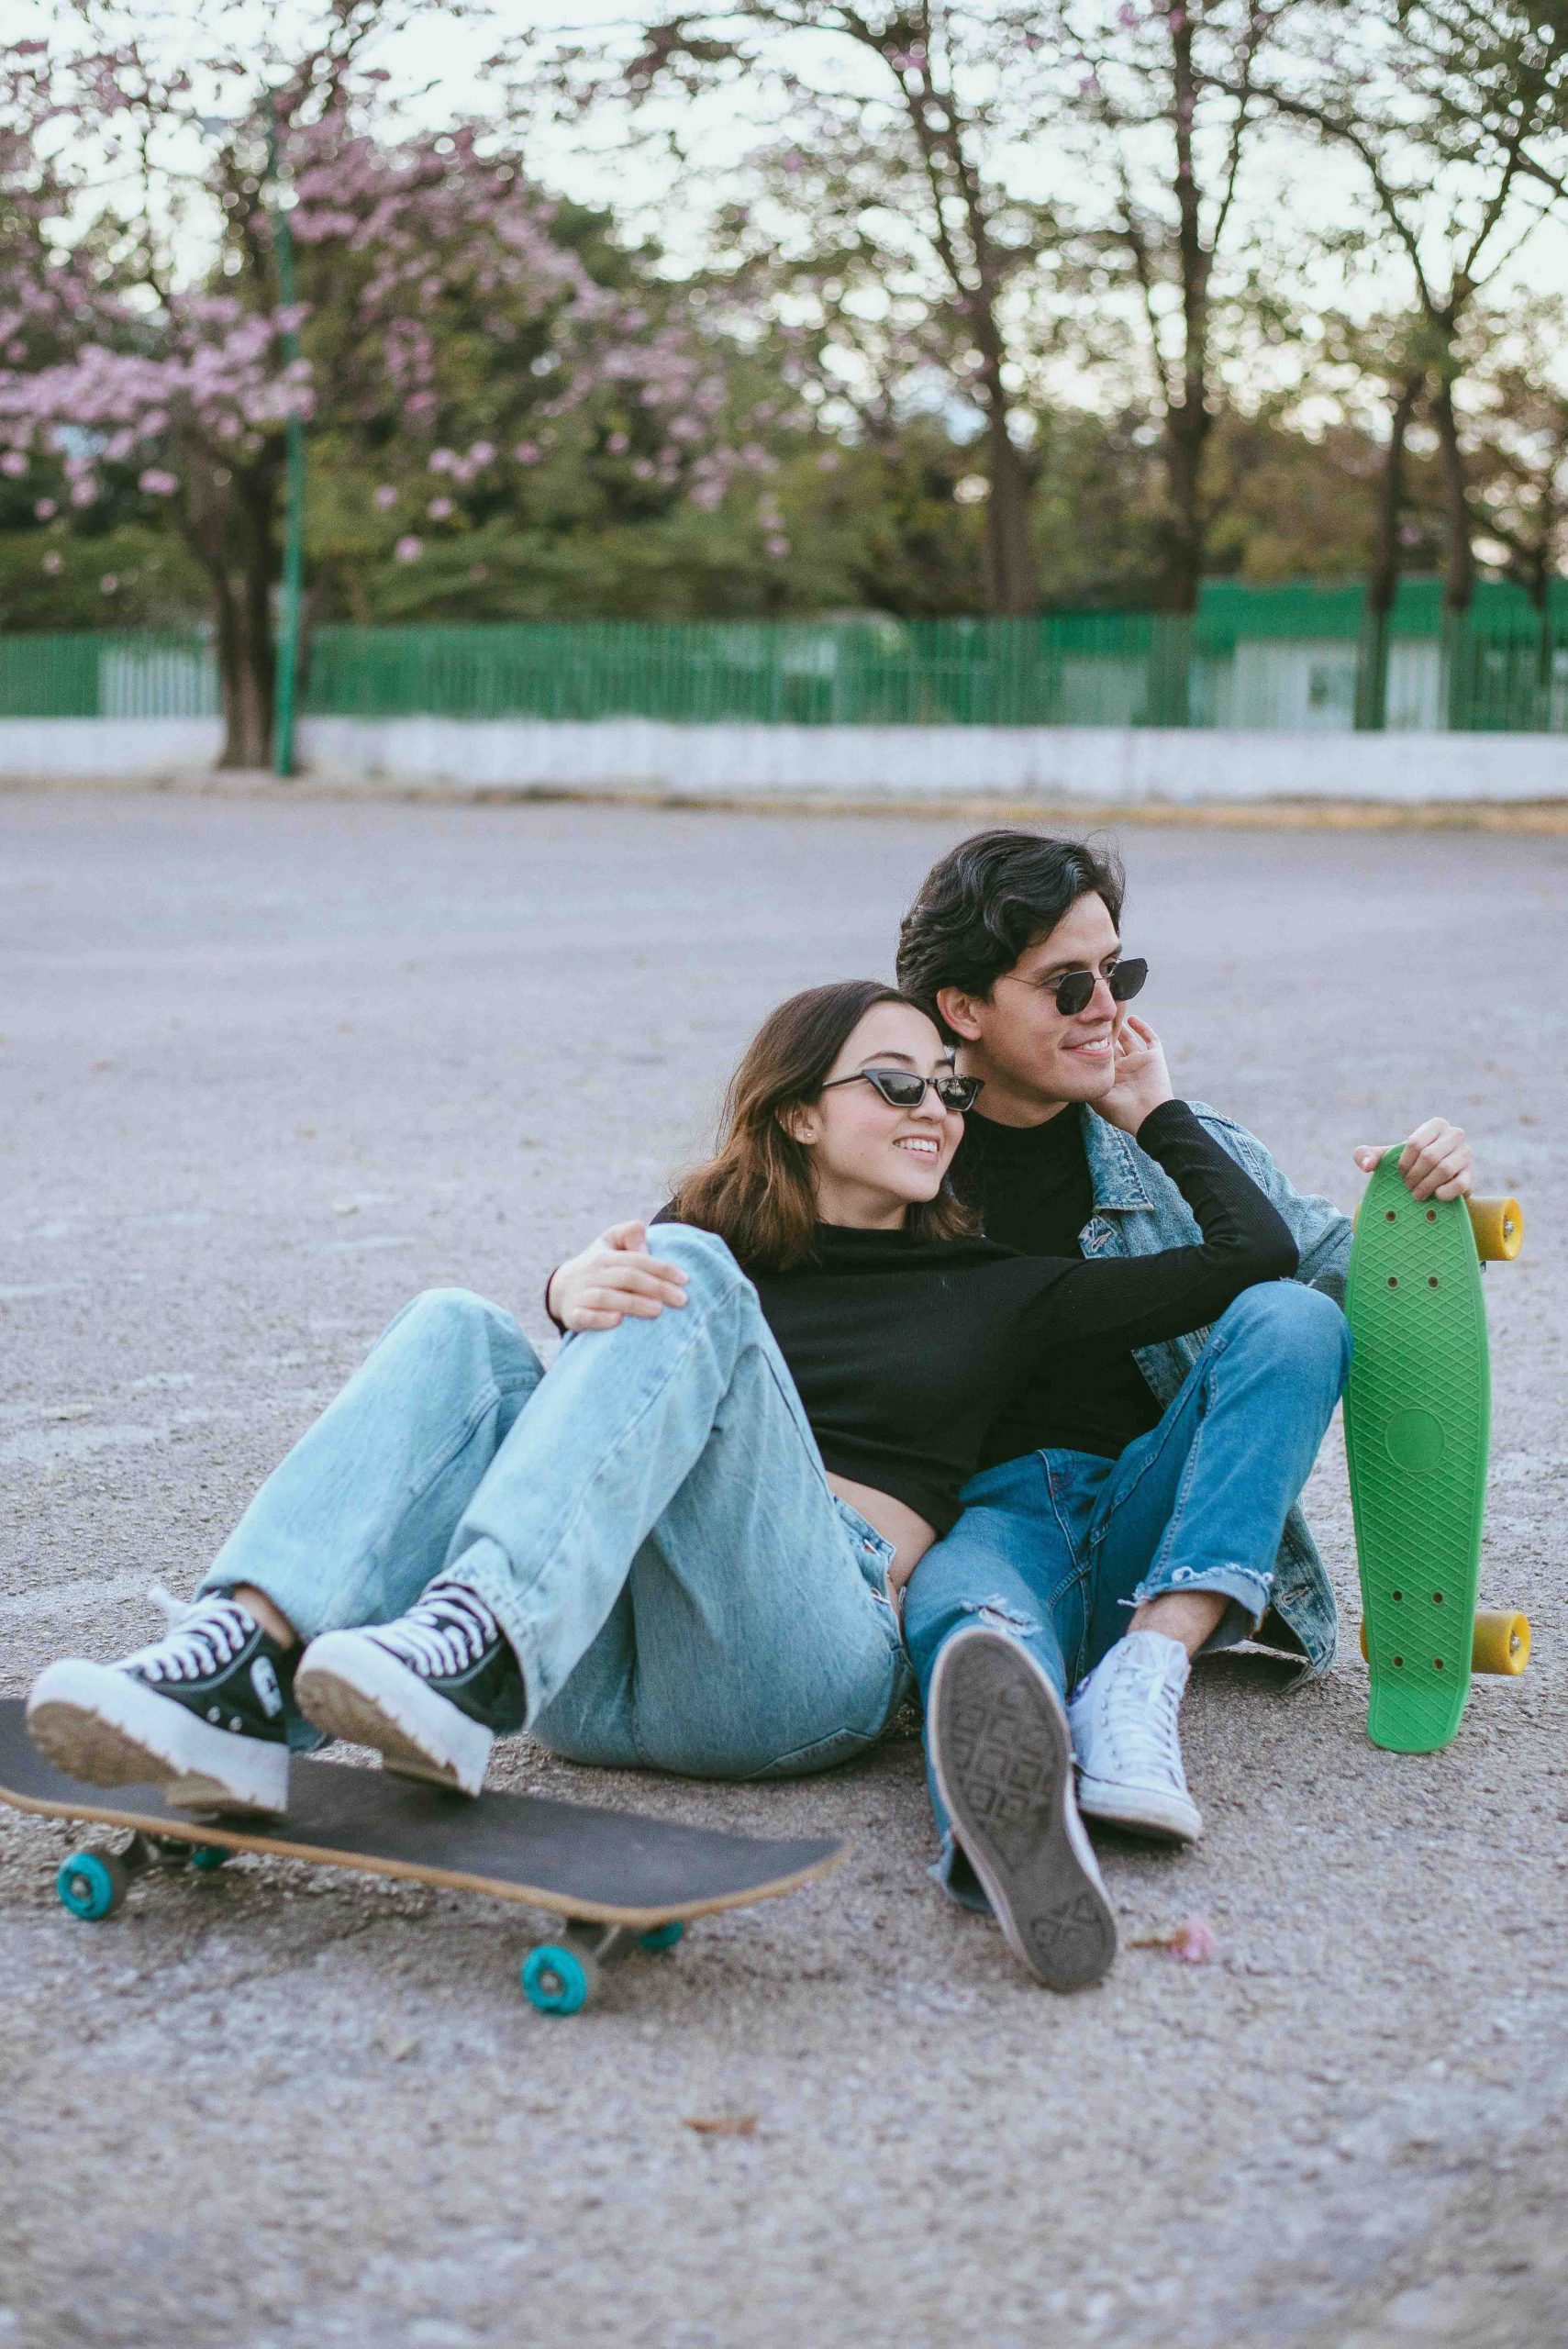 tình yêu cặp đôi ngồi ván trượt